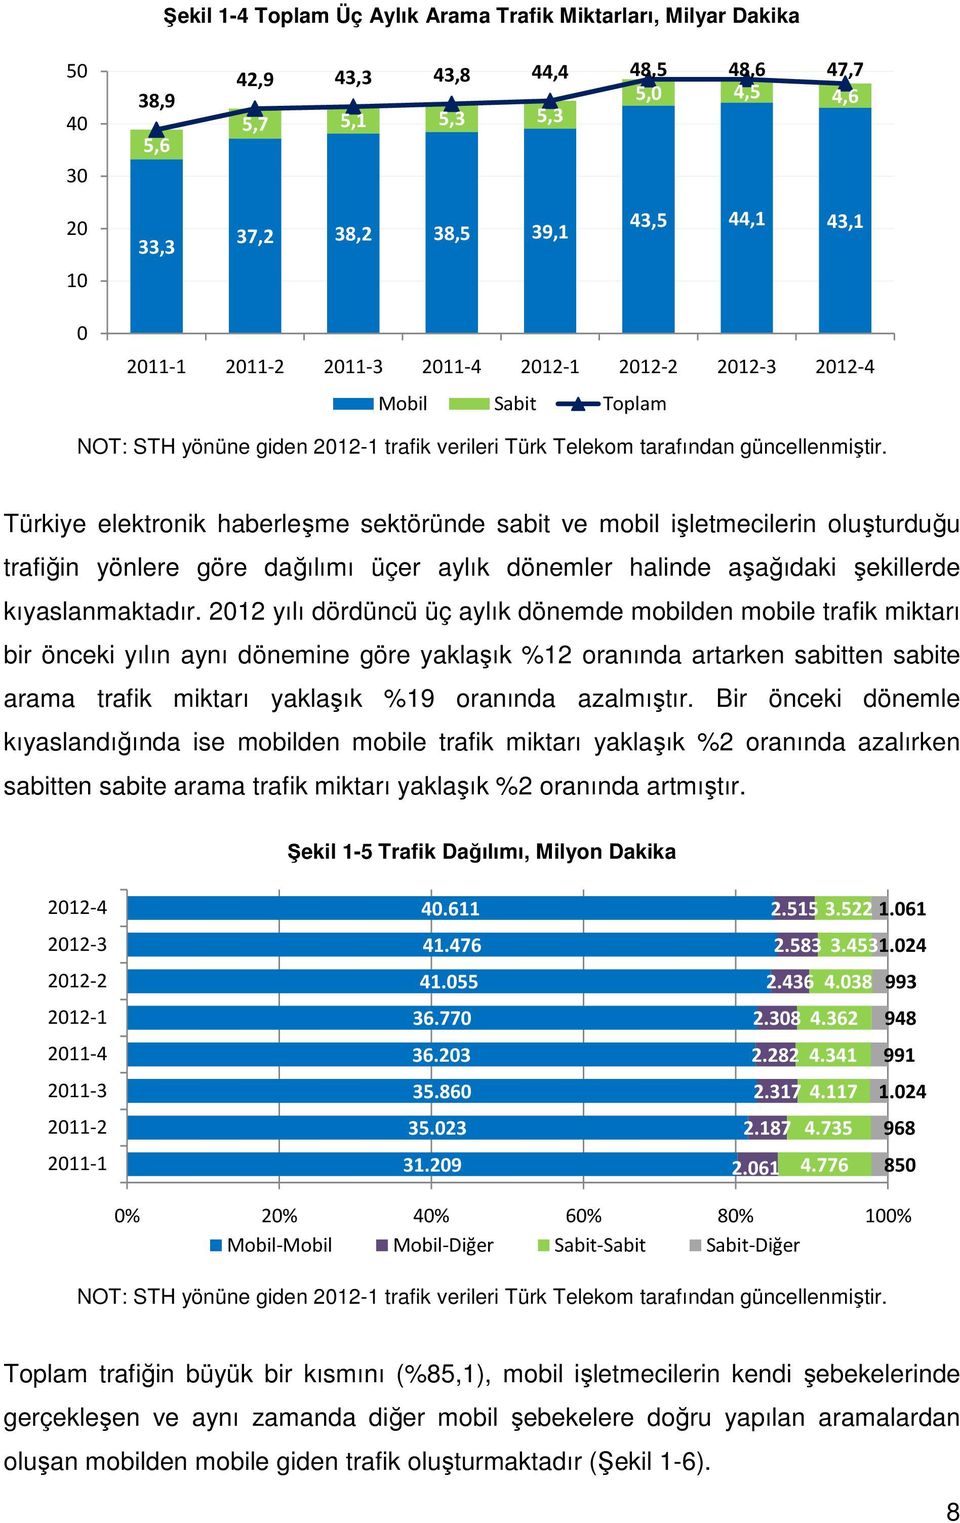 Türkiye elektronik haberleşme sektöründe sabit ve mobil işletmecilerin oluşturduğu trafiğin yönlere göre dağılımı üçer aylık dönemler halinde aşağıdaki şekillerde kıyaslanmaktadır.